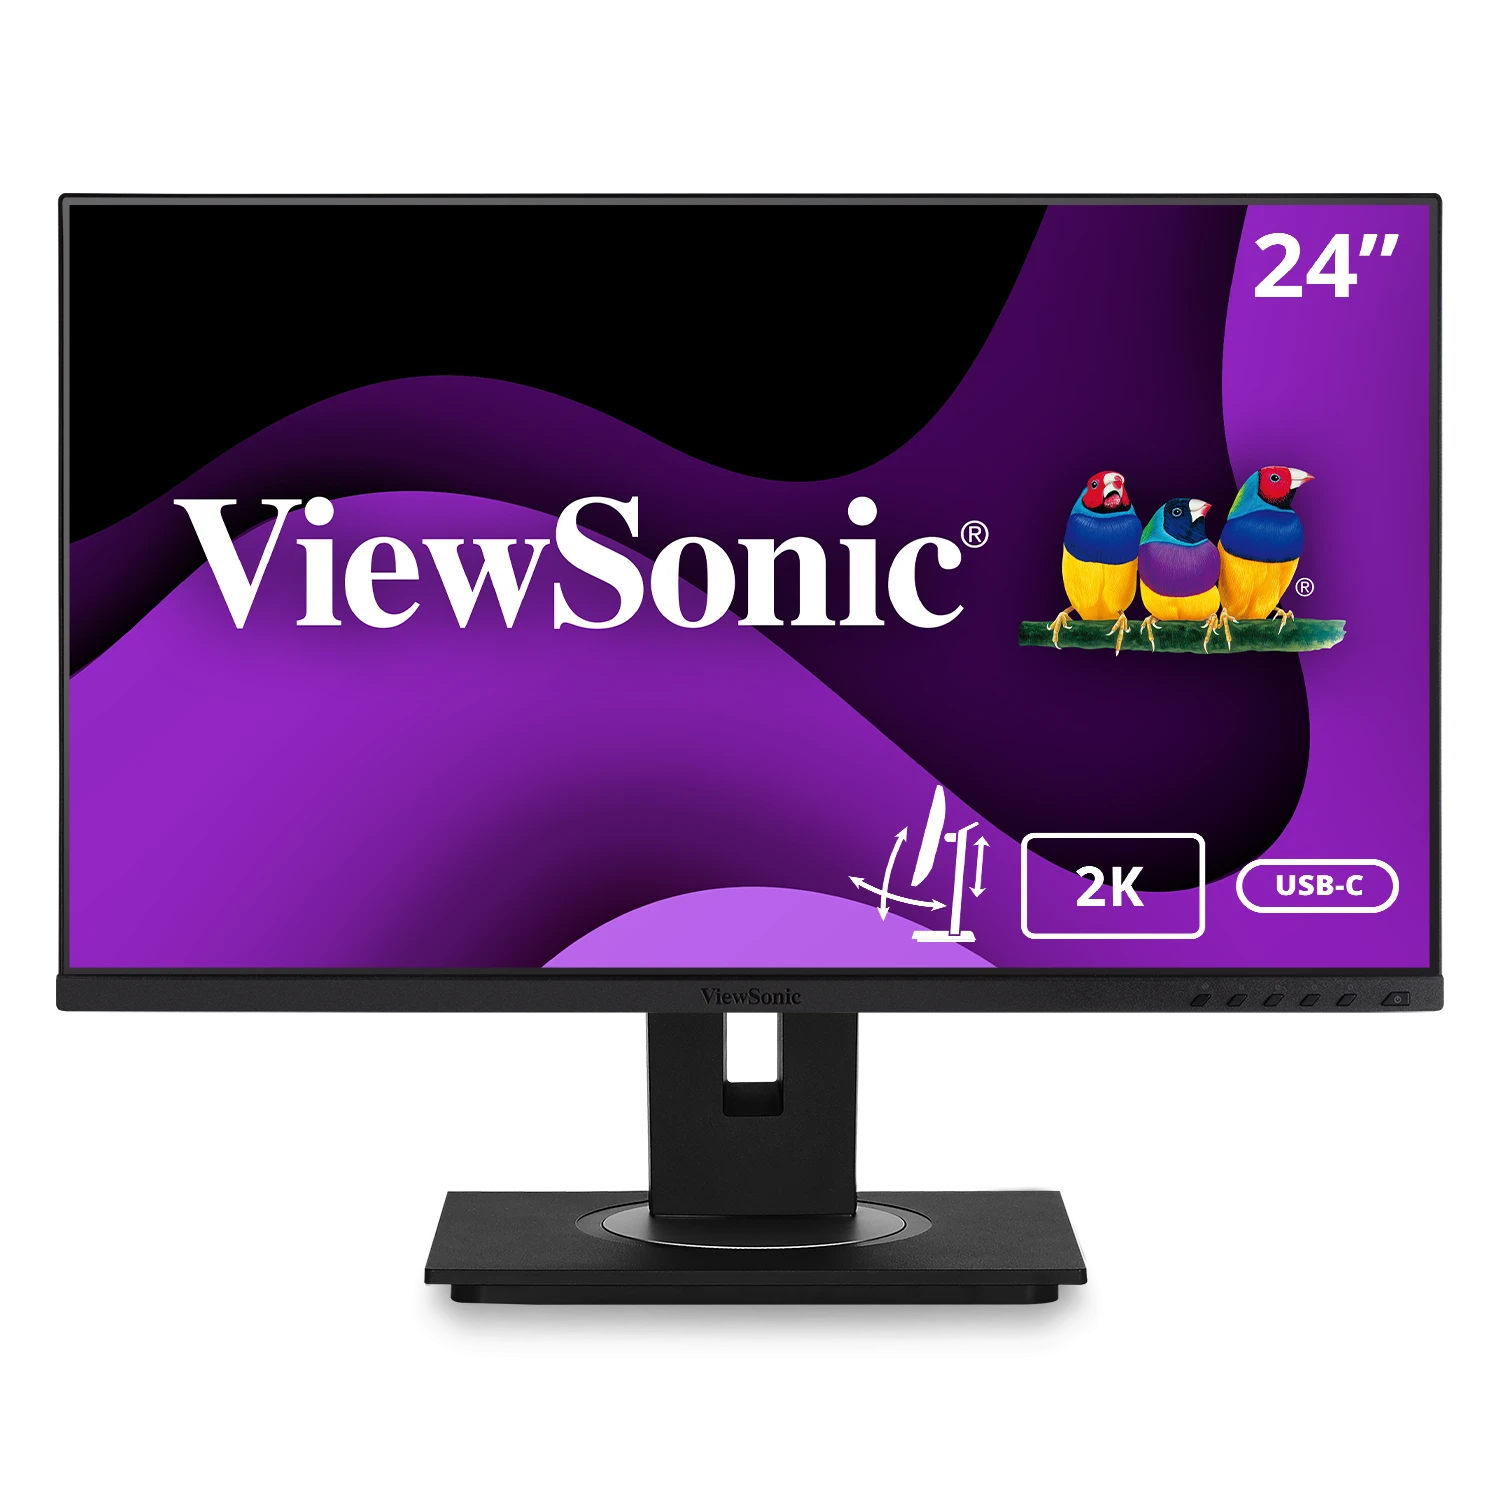 Viewsonic VG2455 24" | 1080P 60Hz IPS Monitor